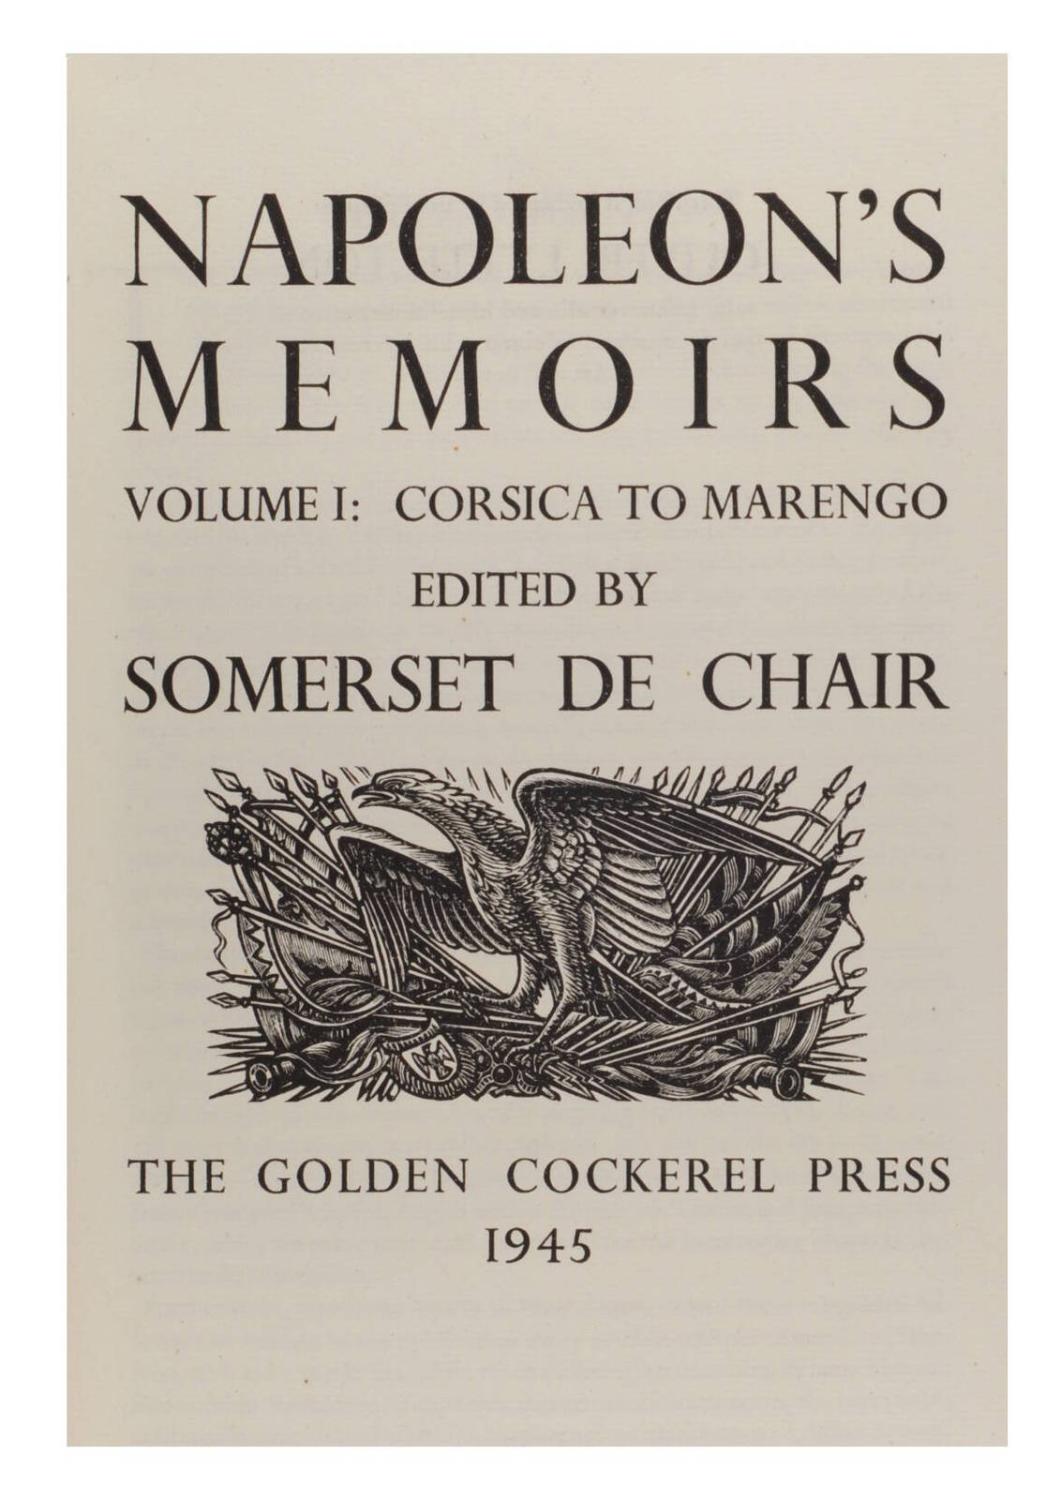 Napoleon's memoirs.